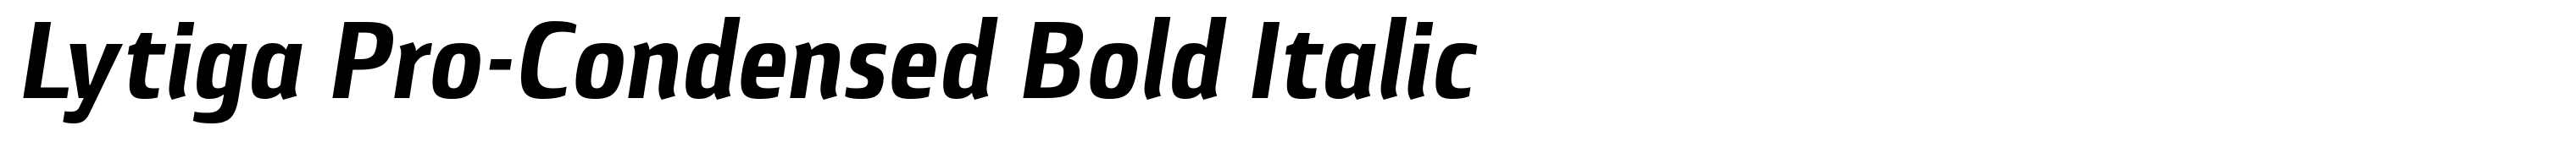 Lytiga Pro-Condensed Bold Italic